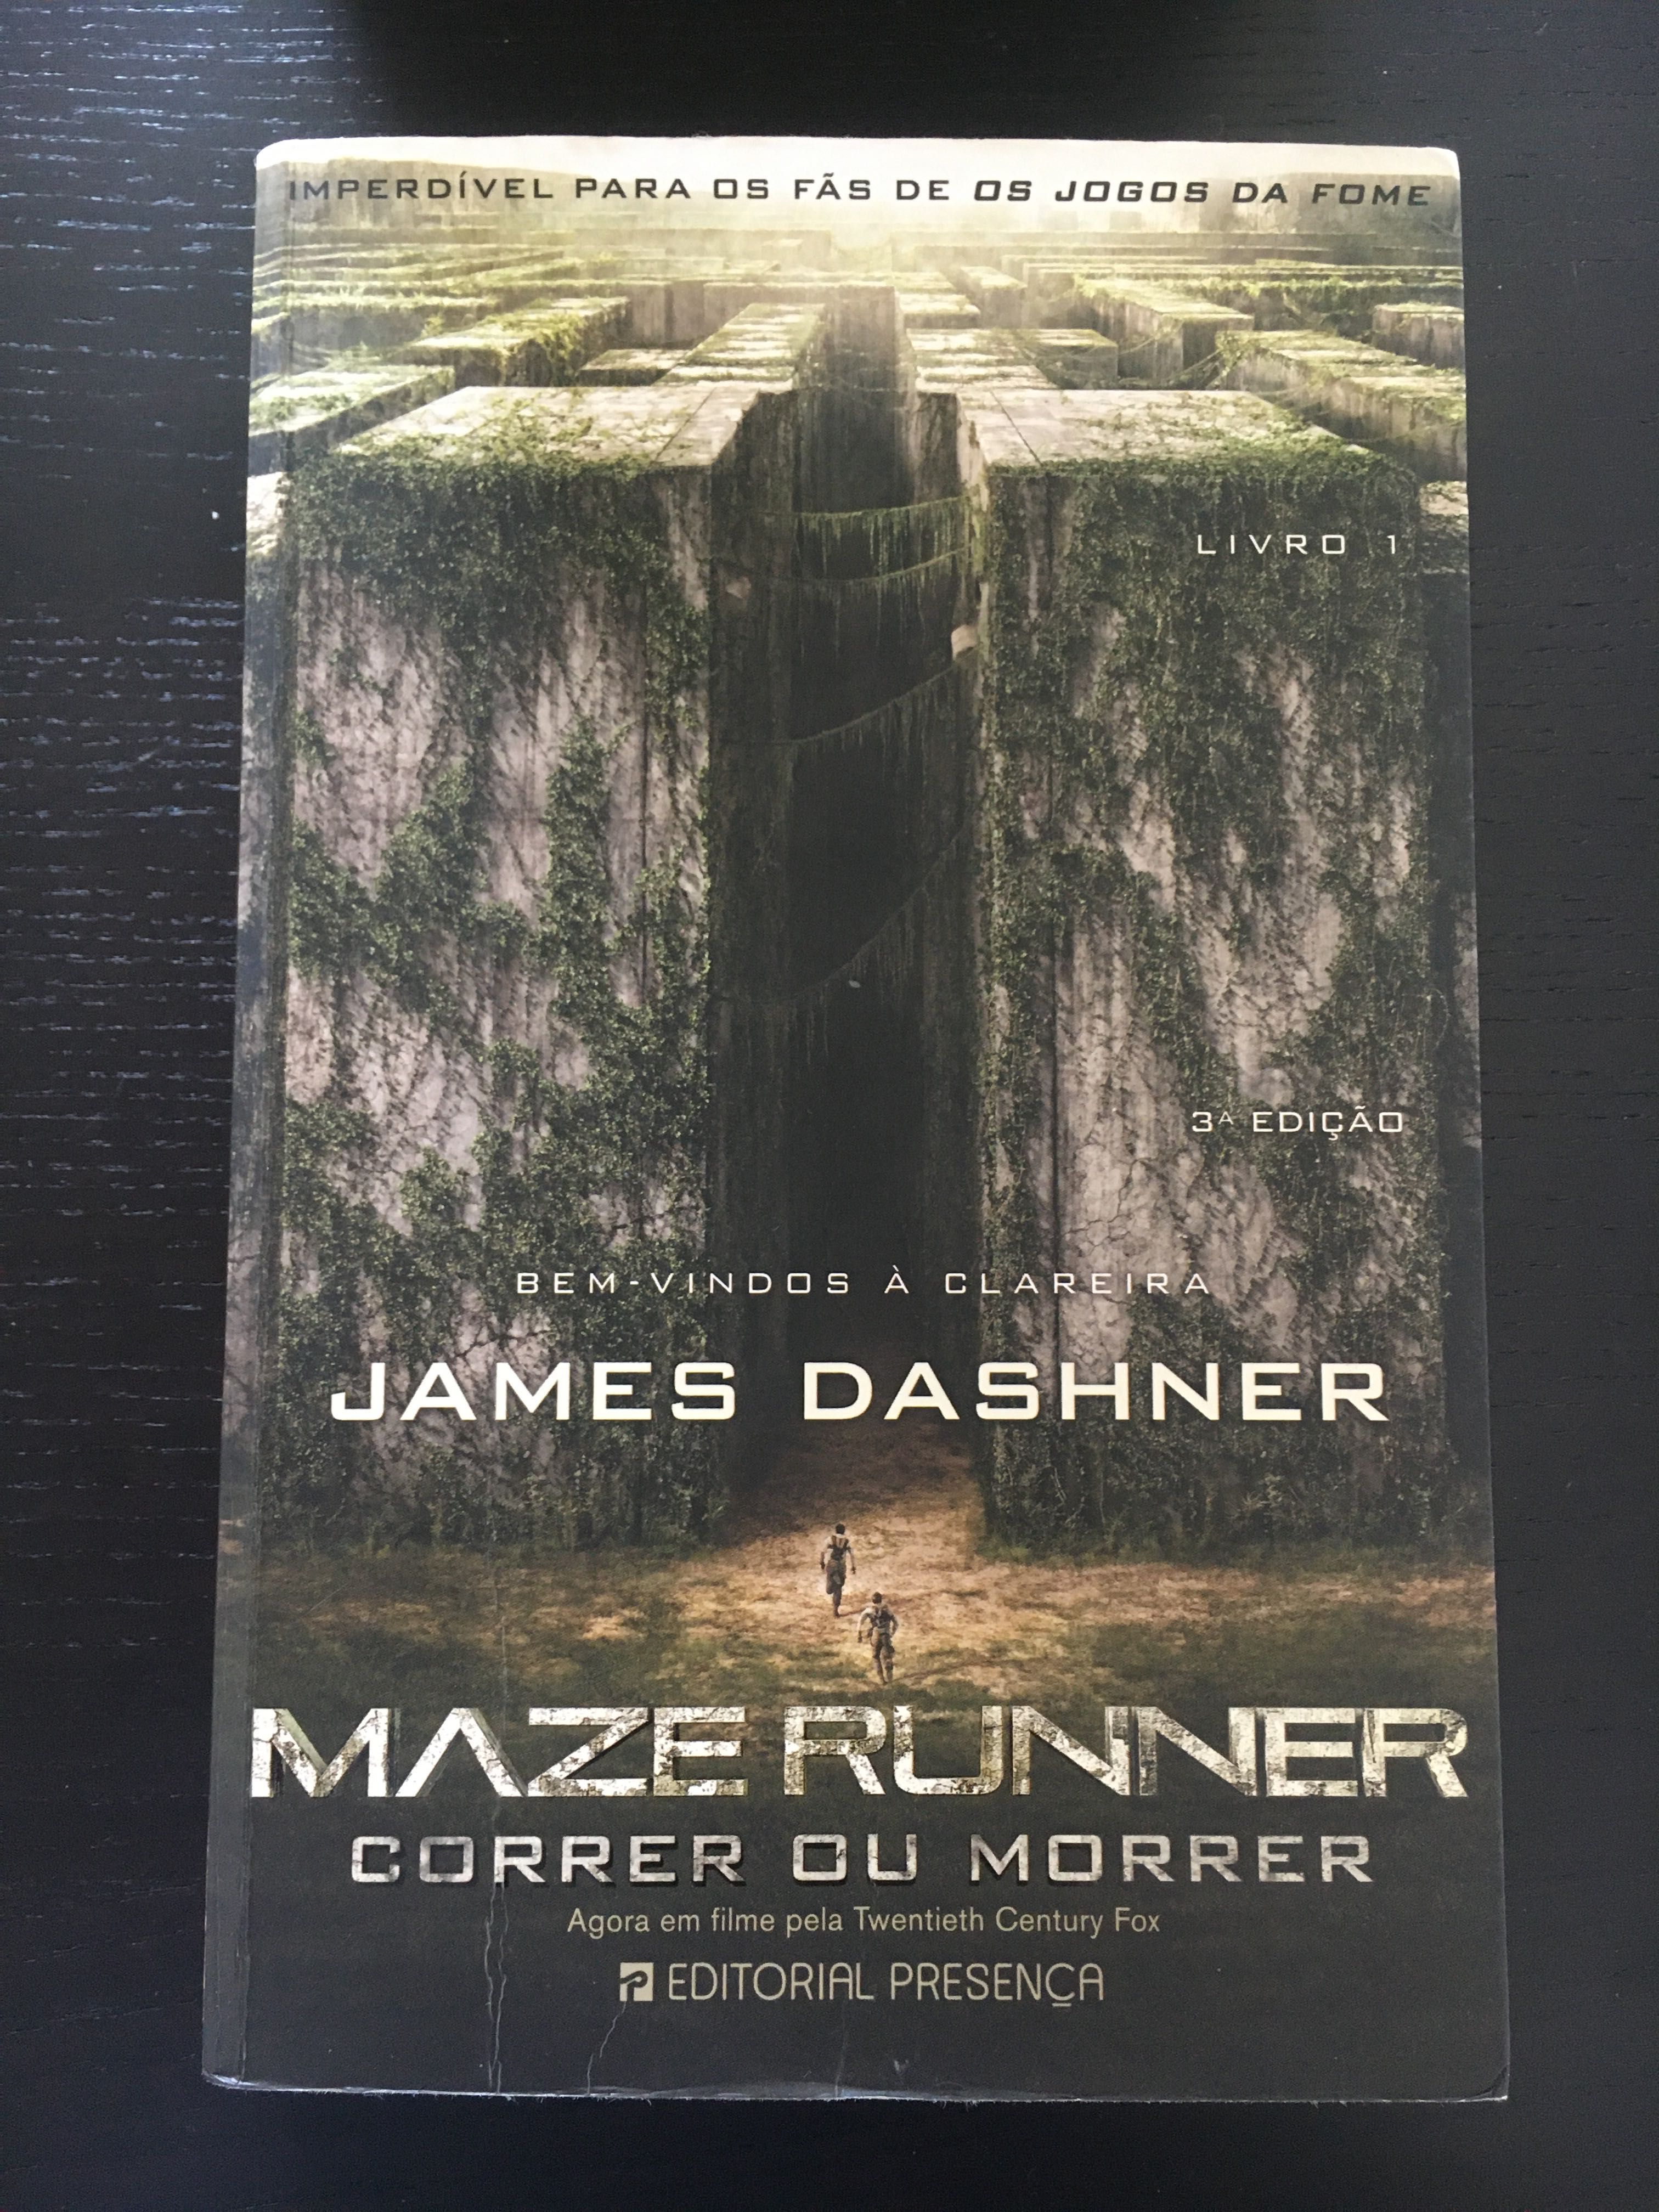 Livro “Maze Runner - Correr ou Morrer”